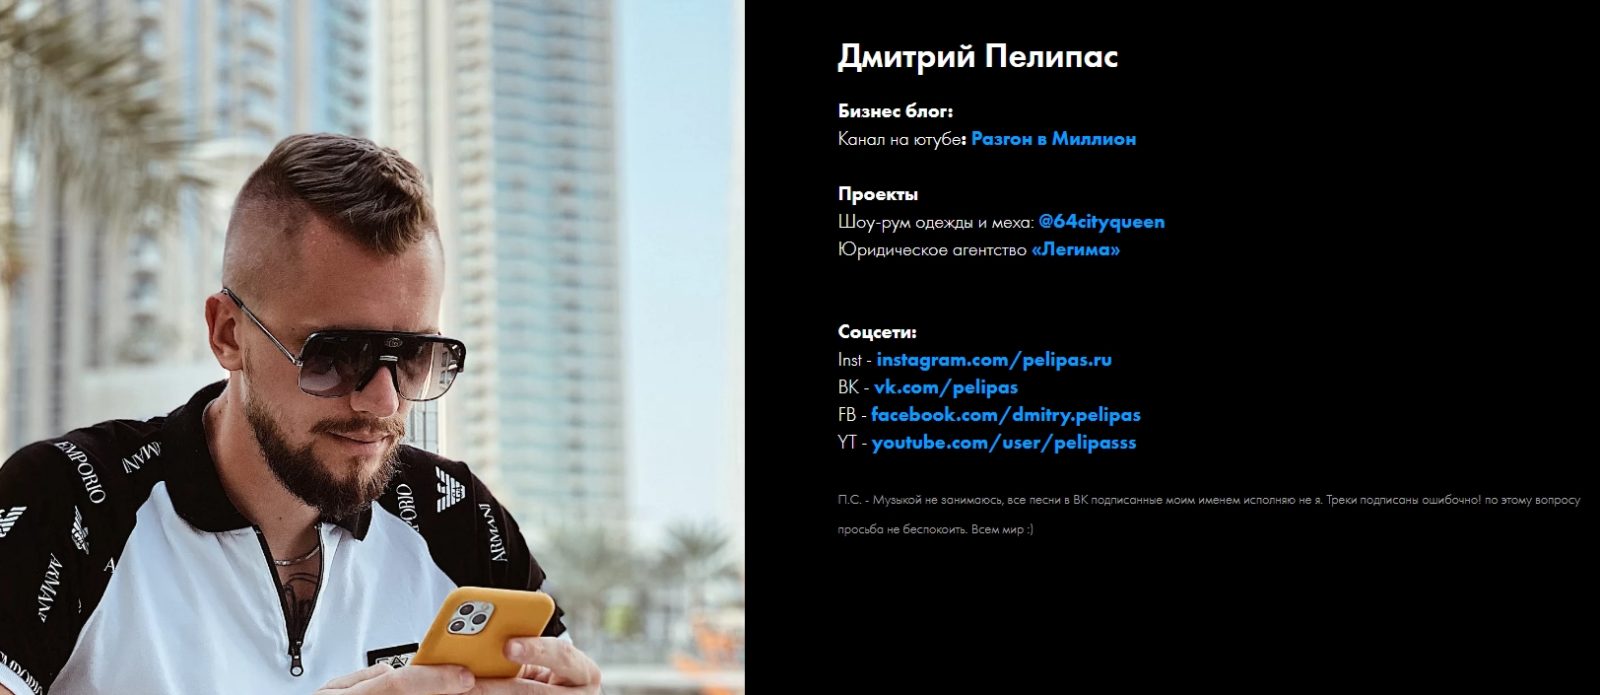 Пелипас Дмитрий – индивидуальный предприниматель и инвестор